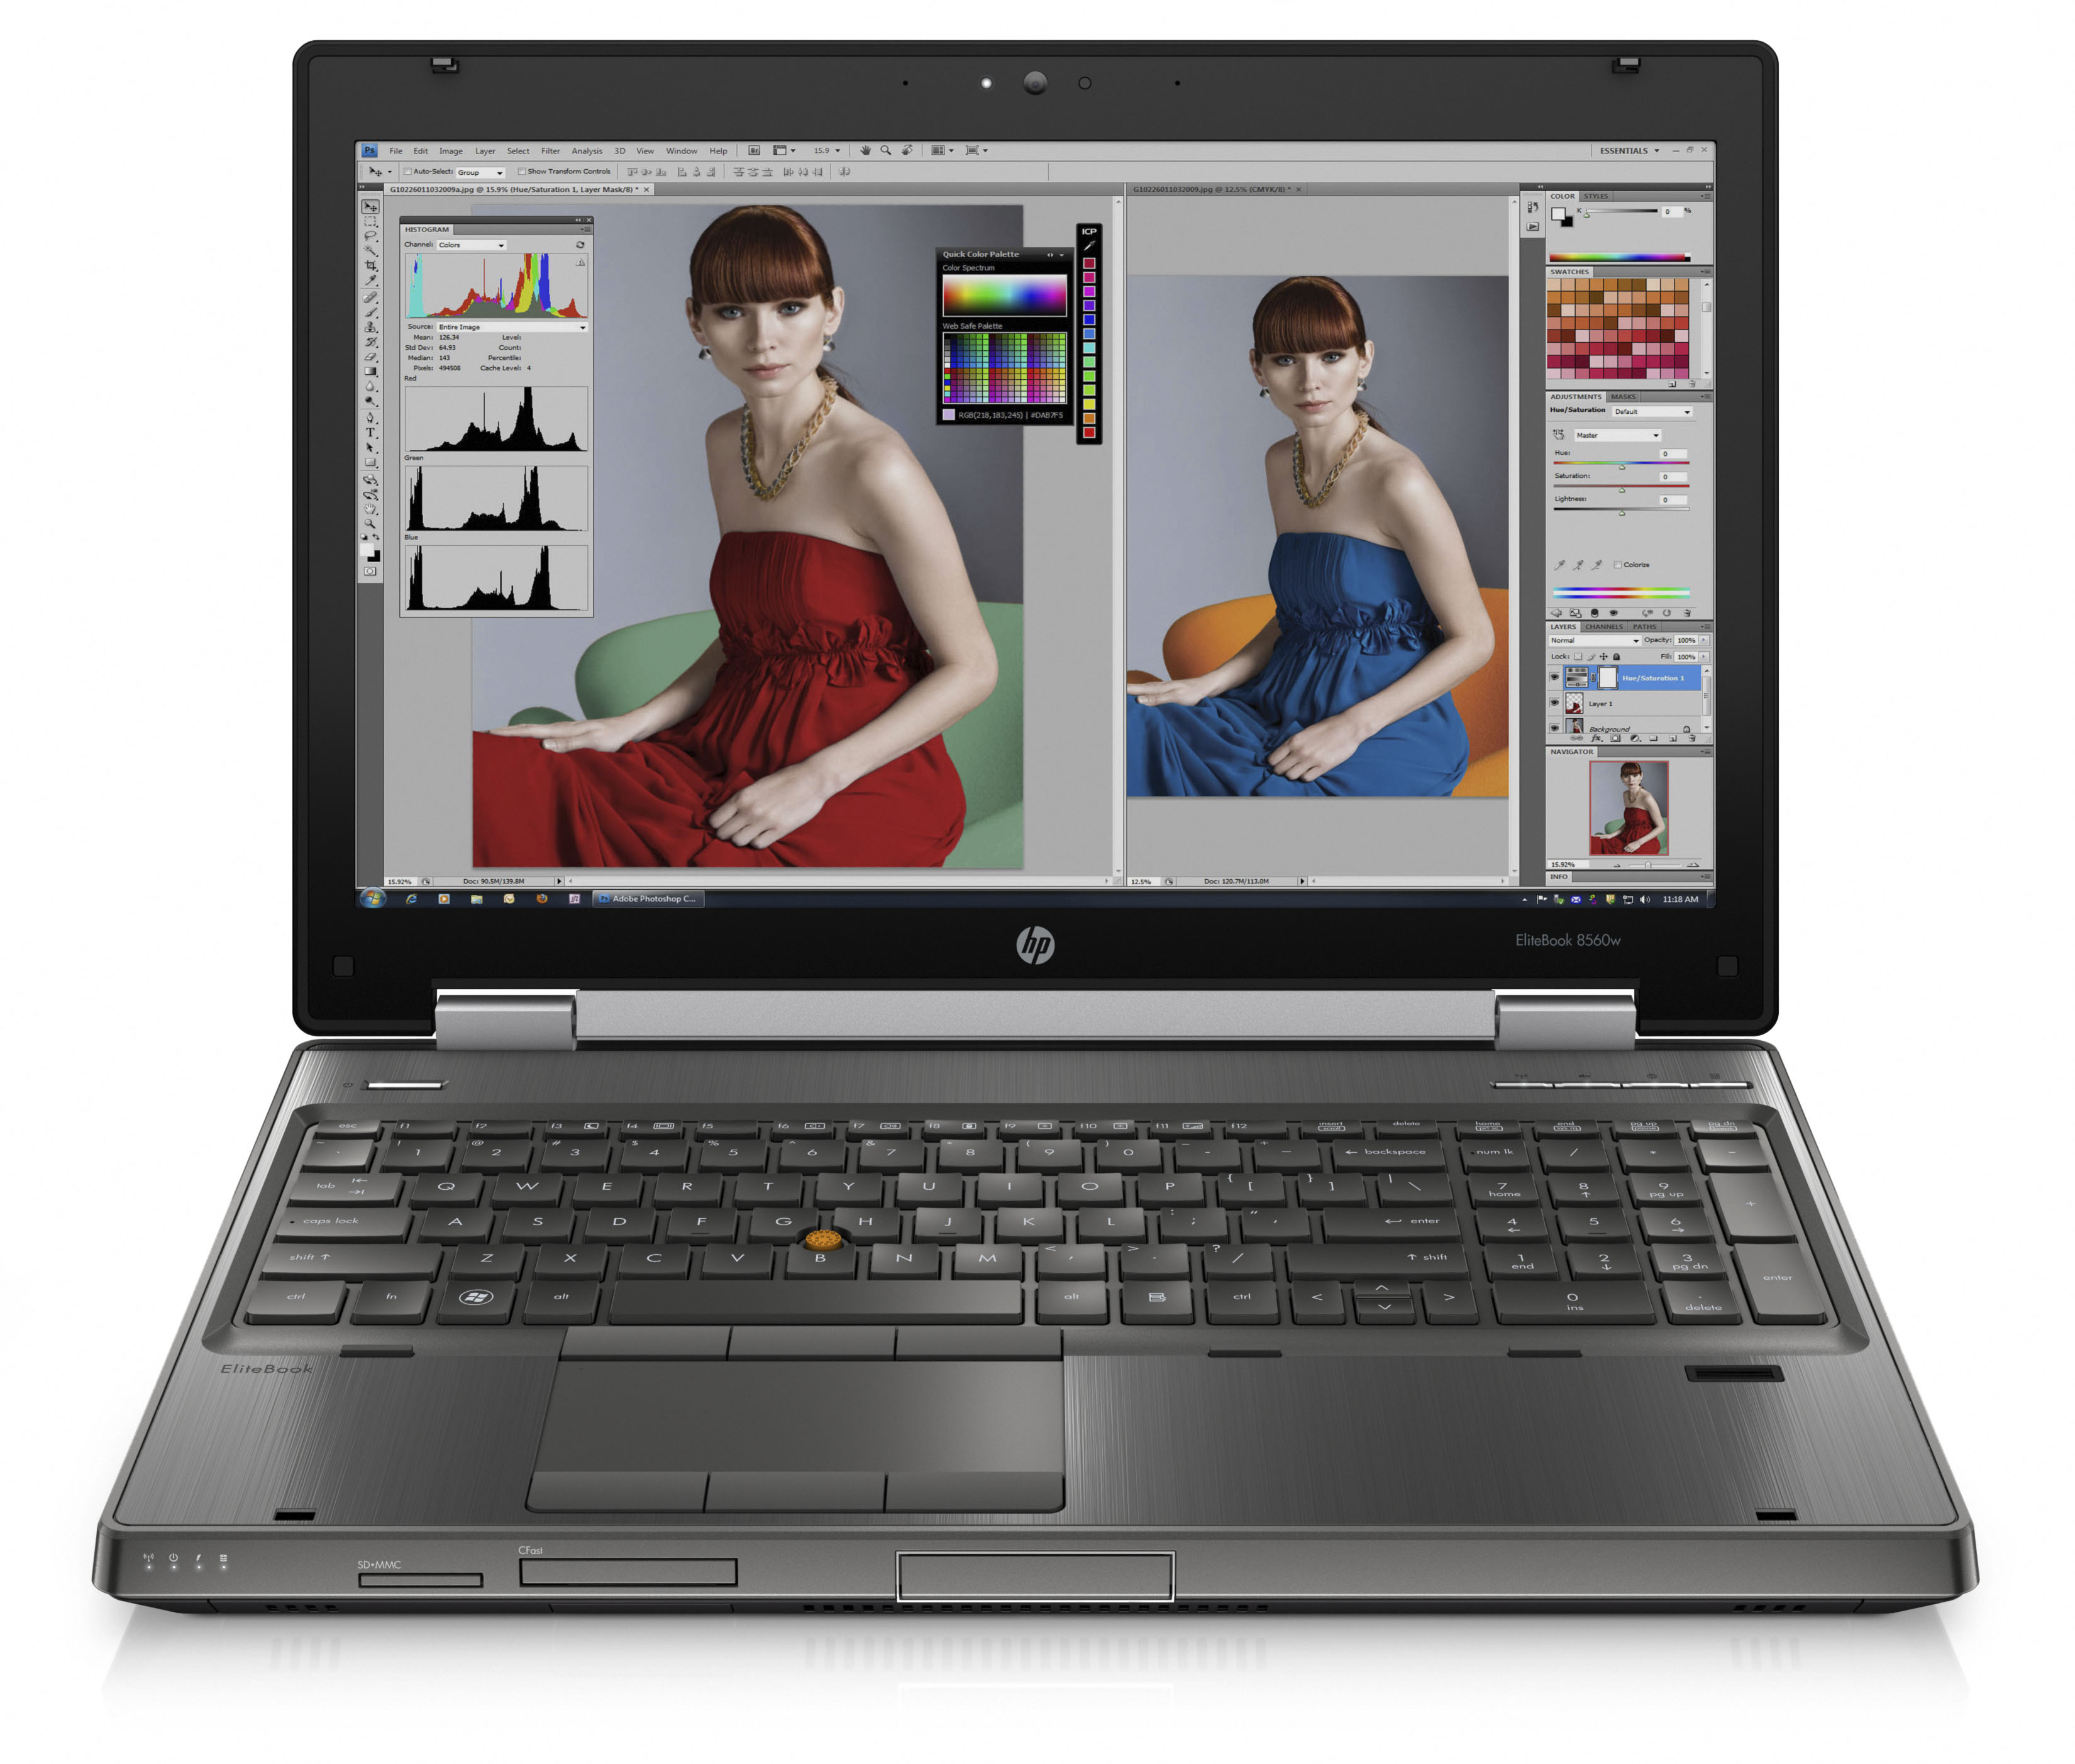 HP Elitebook 8560W Core i7 2720QM, 4GB, 320GB, VGA 2GB NVidia Quadro 1000M-2000M, 15.6 fullHD MÁY CŨ 98%